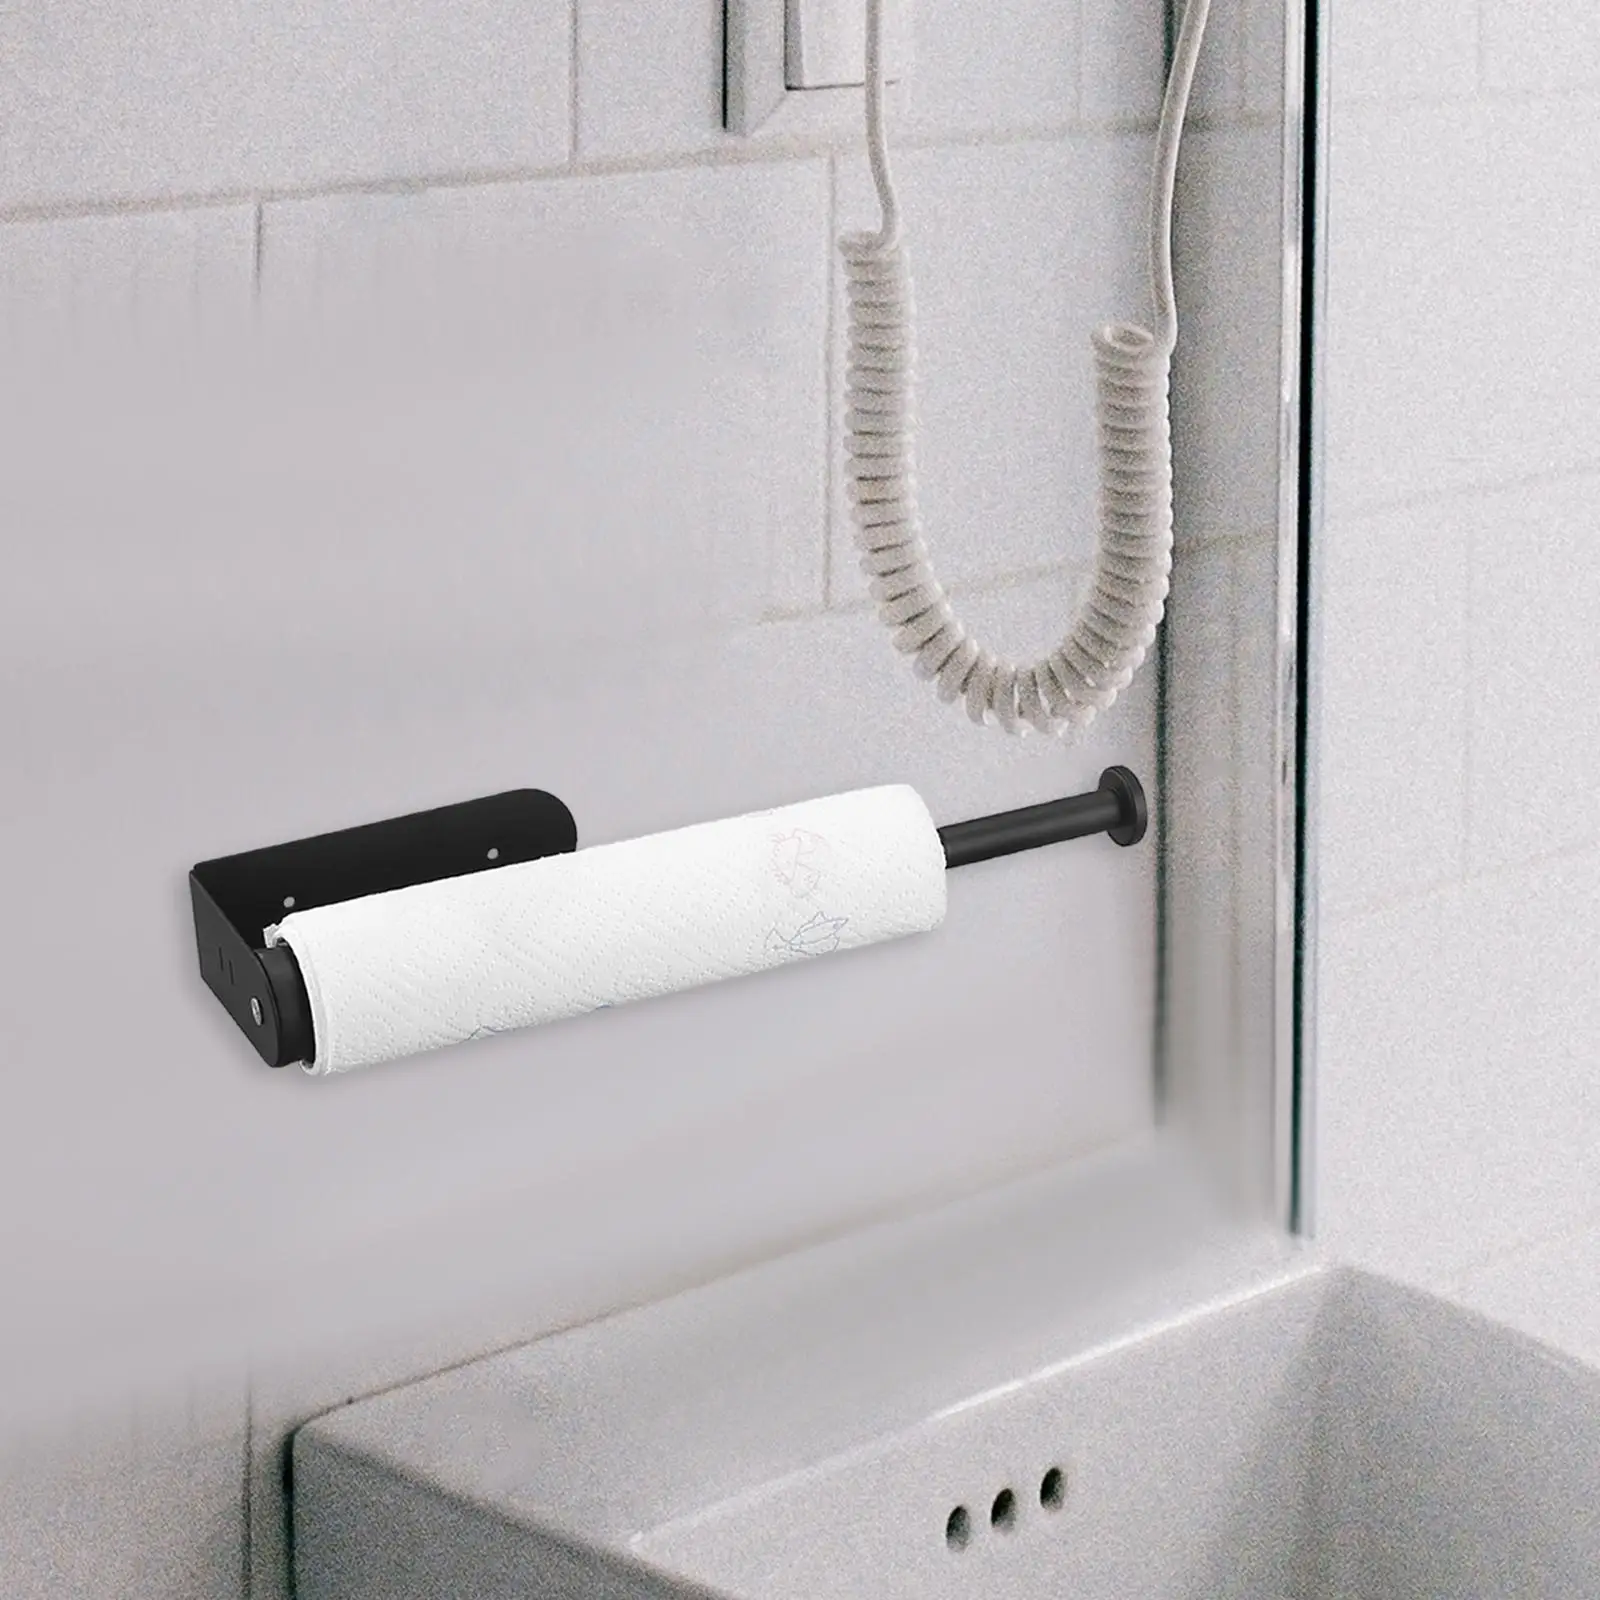 Paper Towel Holder, Toilet Paper Holder for Kitchen, Bathroom, Home